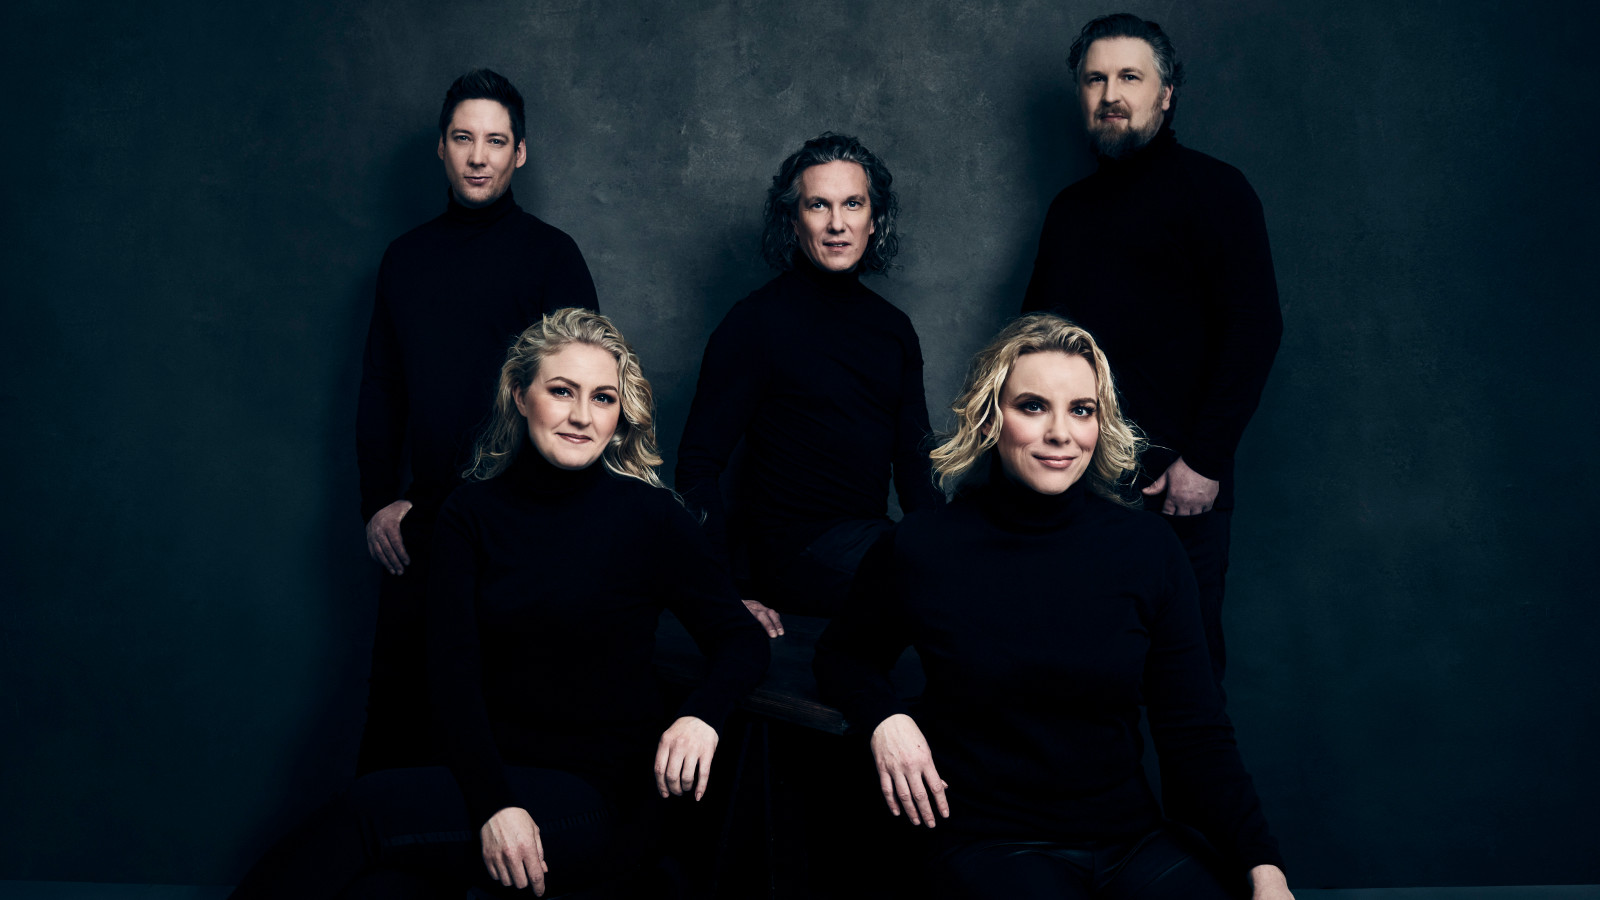 Kuvassa ovat Club for Fiven viisi laulajaa siten, että heistä kaksi miestä seisoo takana ja keskellä istuu yksi nainen.  Edessä istuu kaksi naista.  Kaikilla on mustat vaatteet ja tausta on tumma.